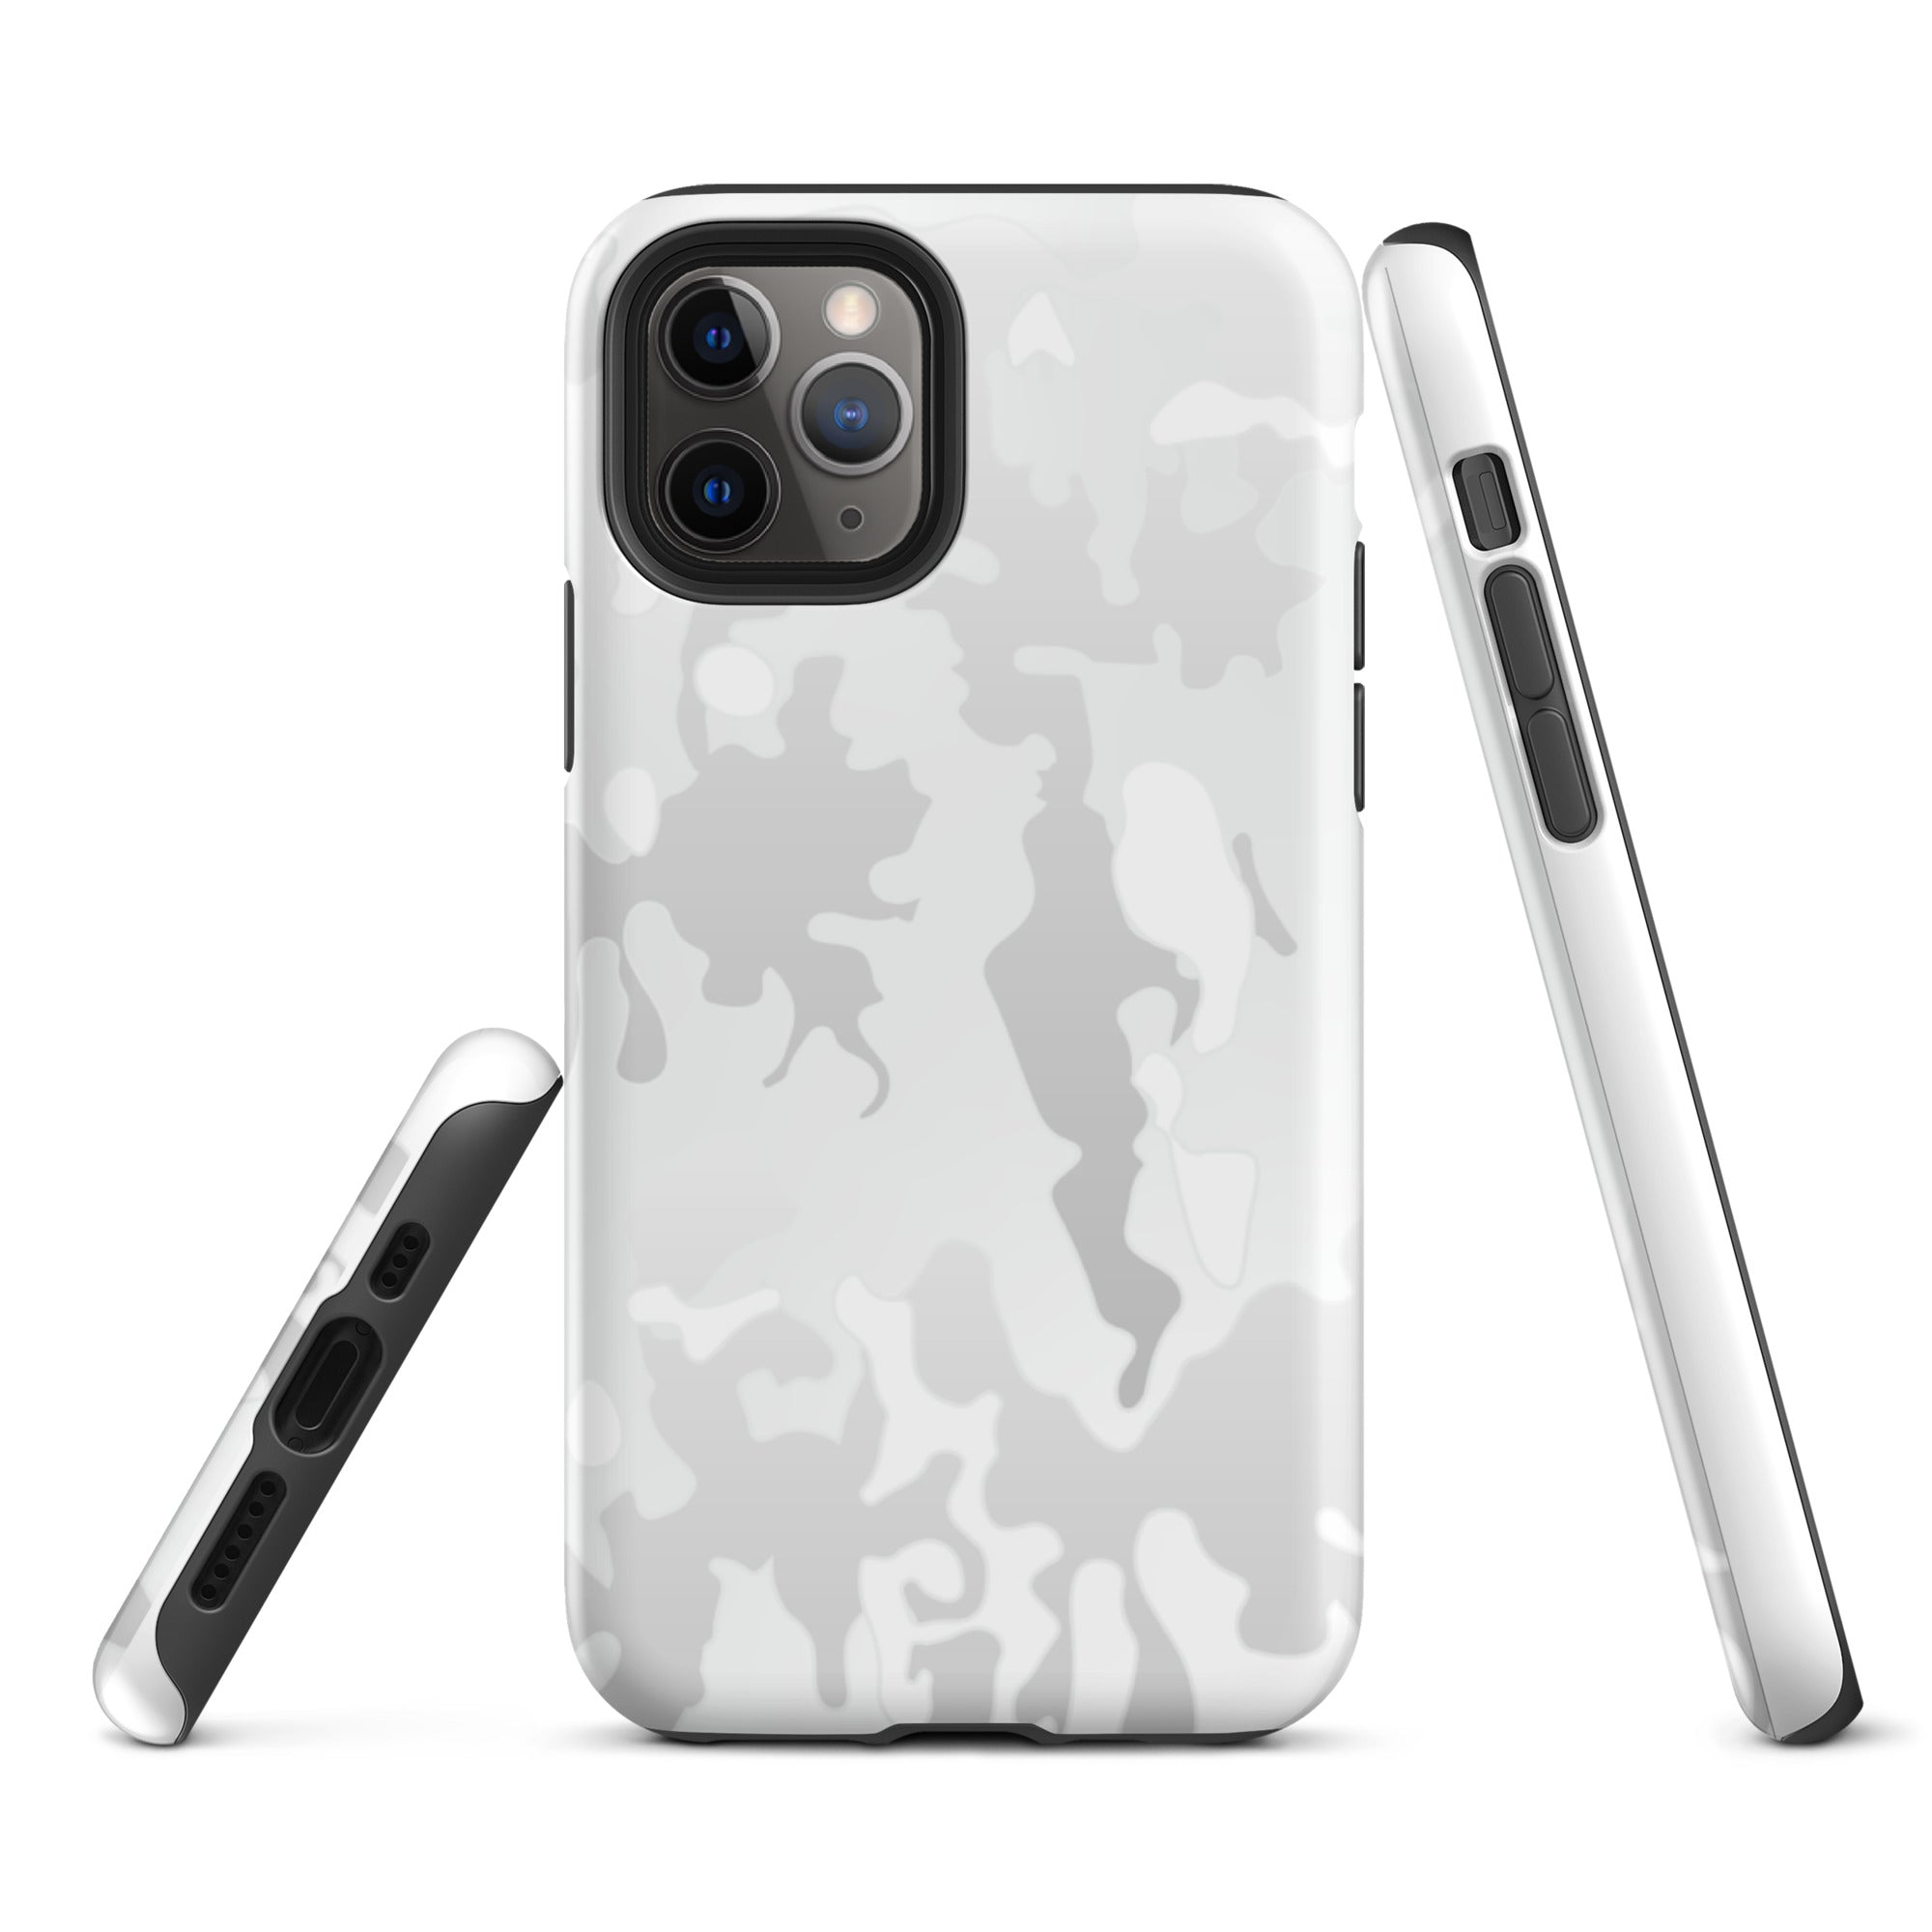 Multicam Arctic iPhone case